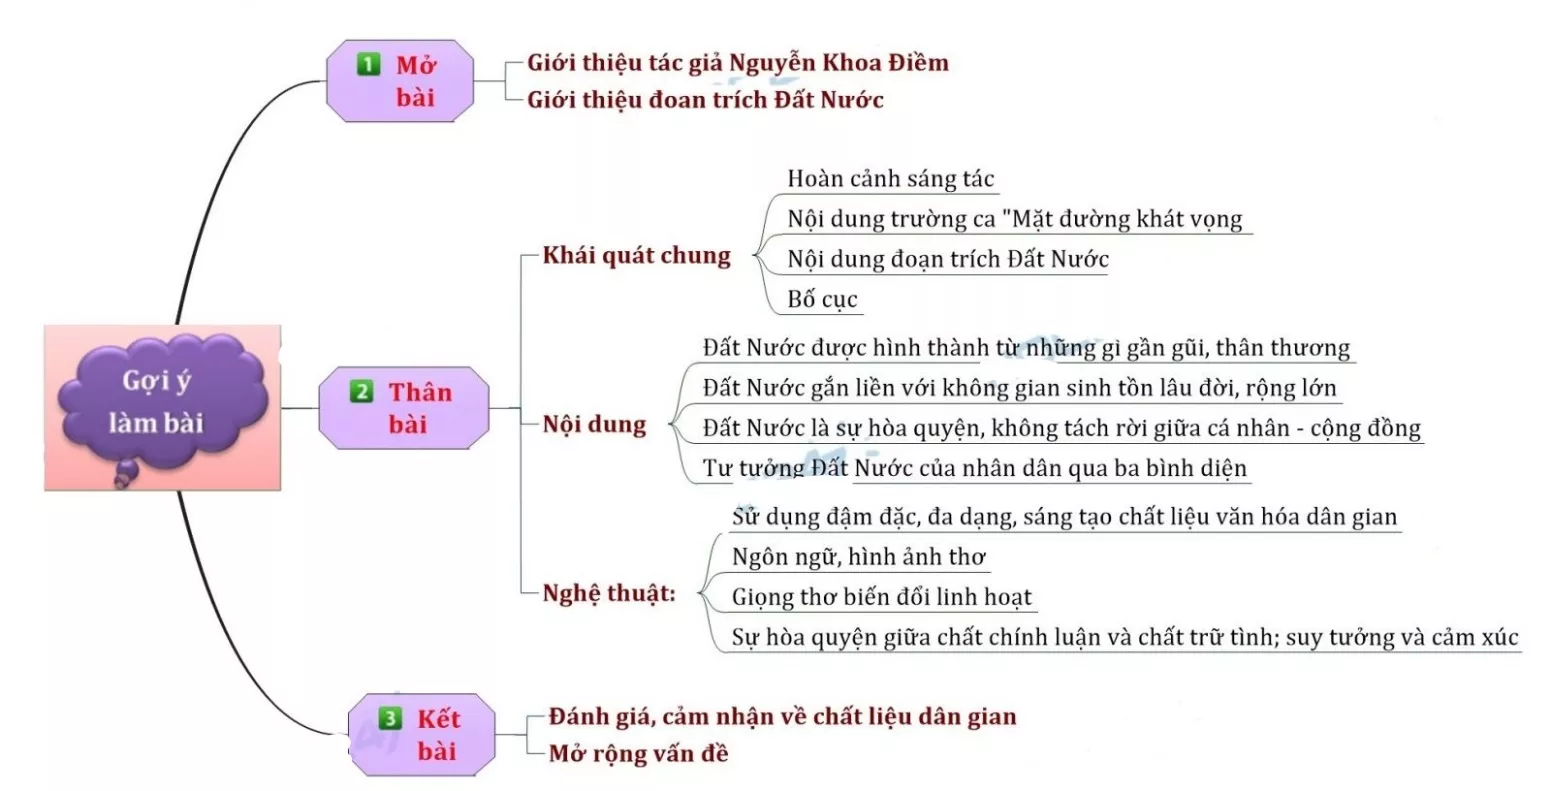 Phân tích bài thơ - Hình ảnh này sẽ giúp bạn hiểu sâu hơn về những tác phẩm văn học của nước ta. Khám phá các chi tiết, cách sắp xếp câu từ và ý nghĩa mà tác giả muốn nhấn mạnh trong bài thơ. Mở mang kiến thức và tìm hiểu thêm về văn hóa Việt.